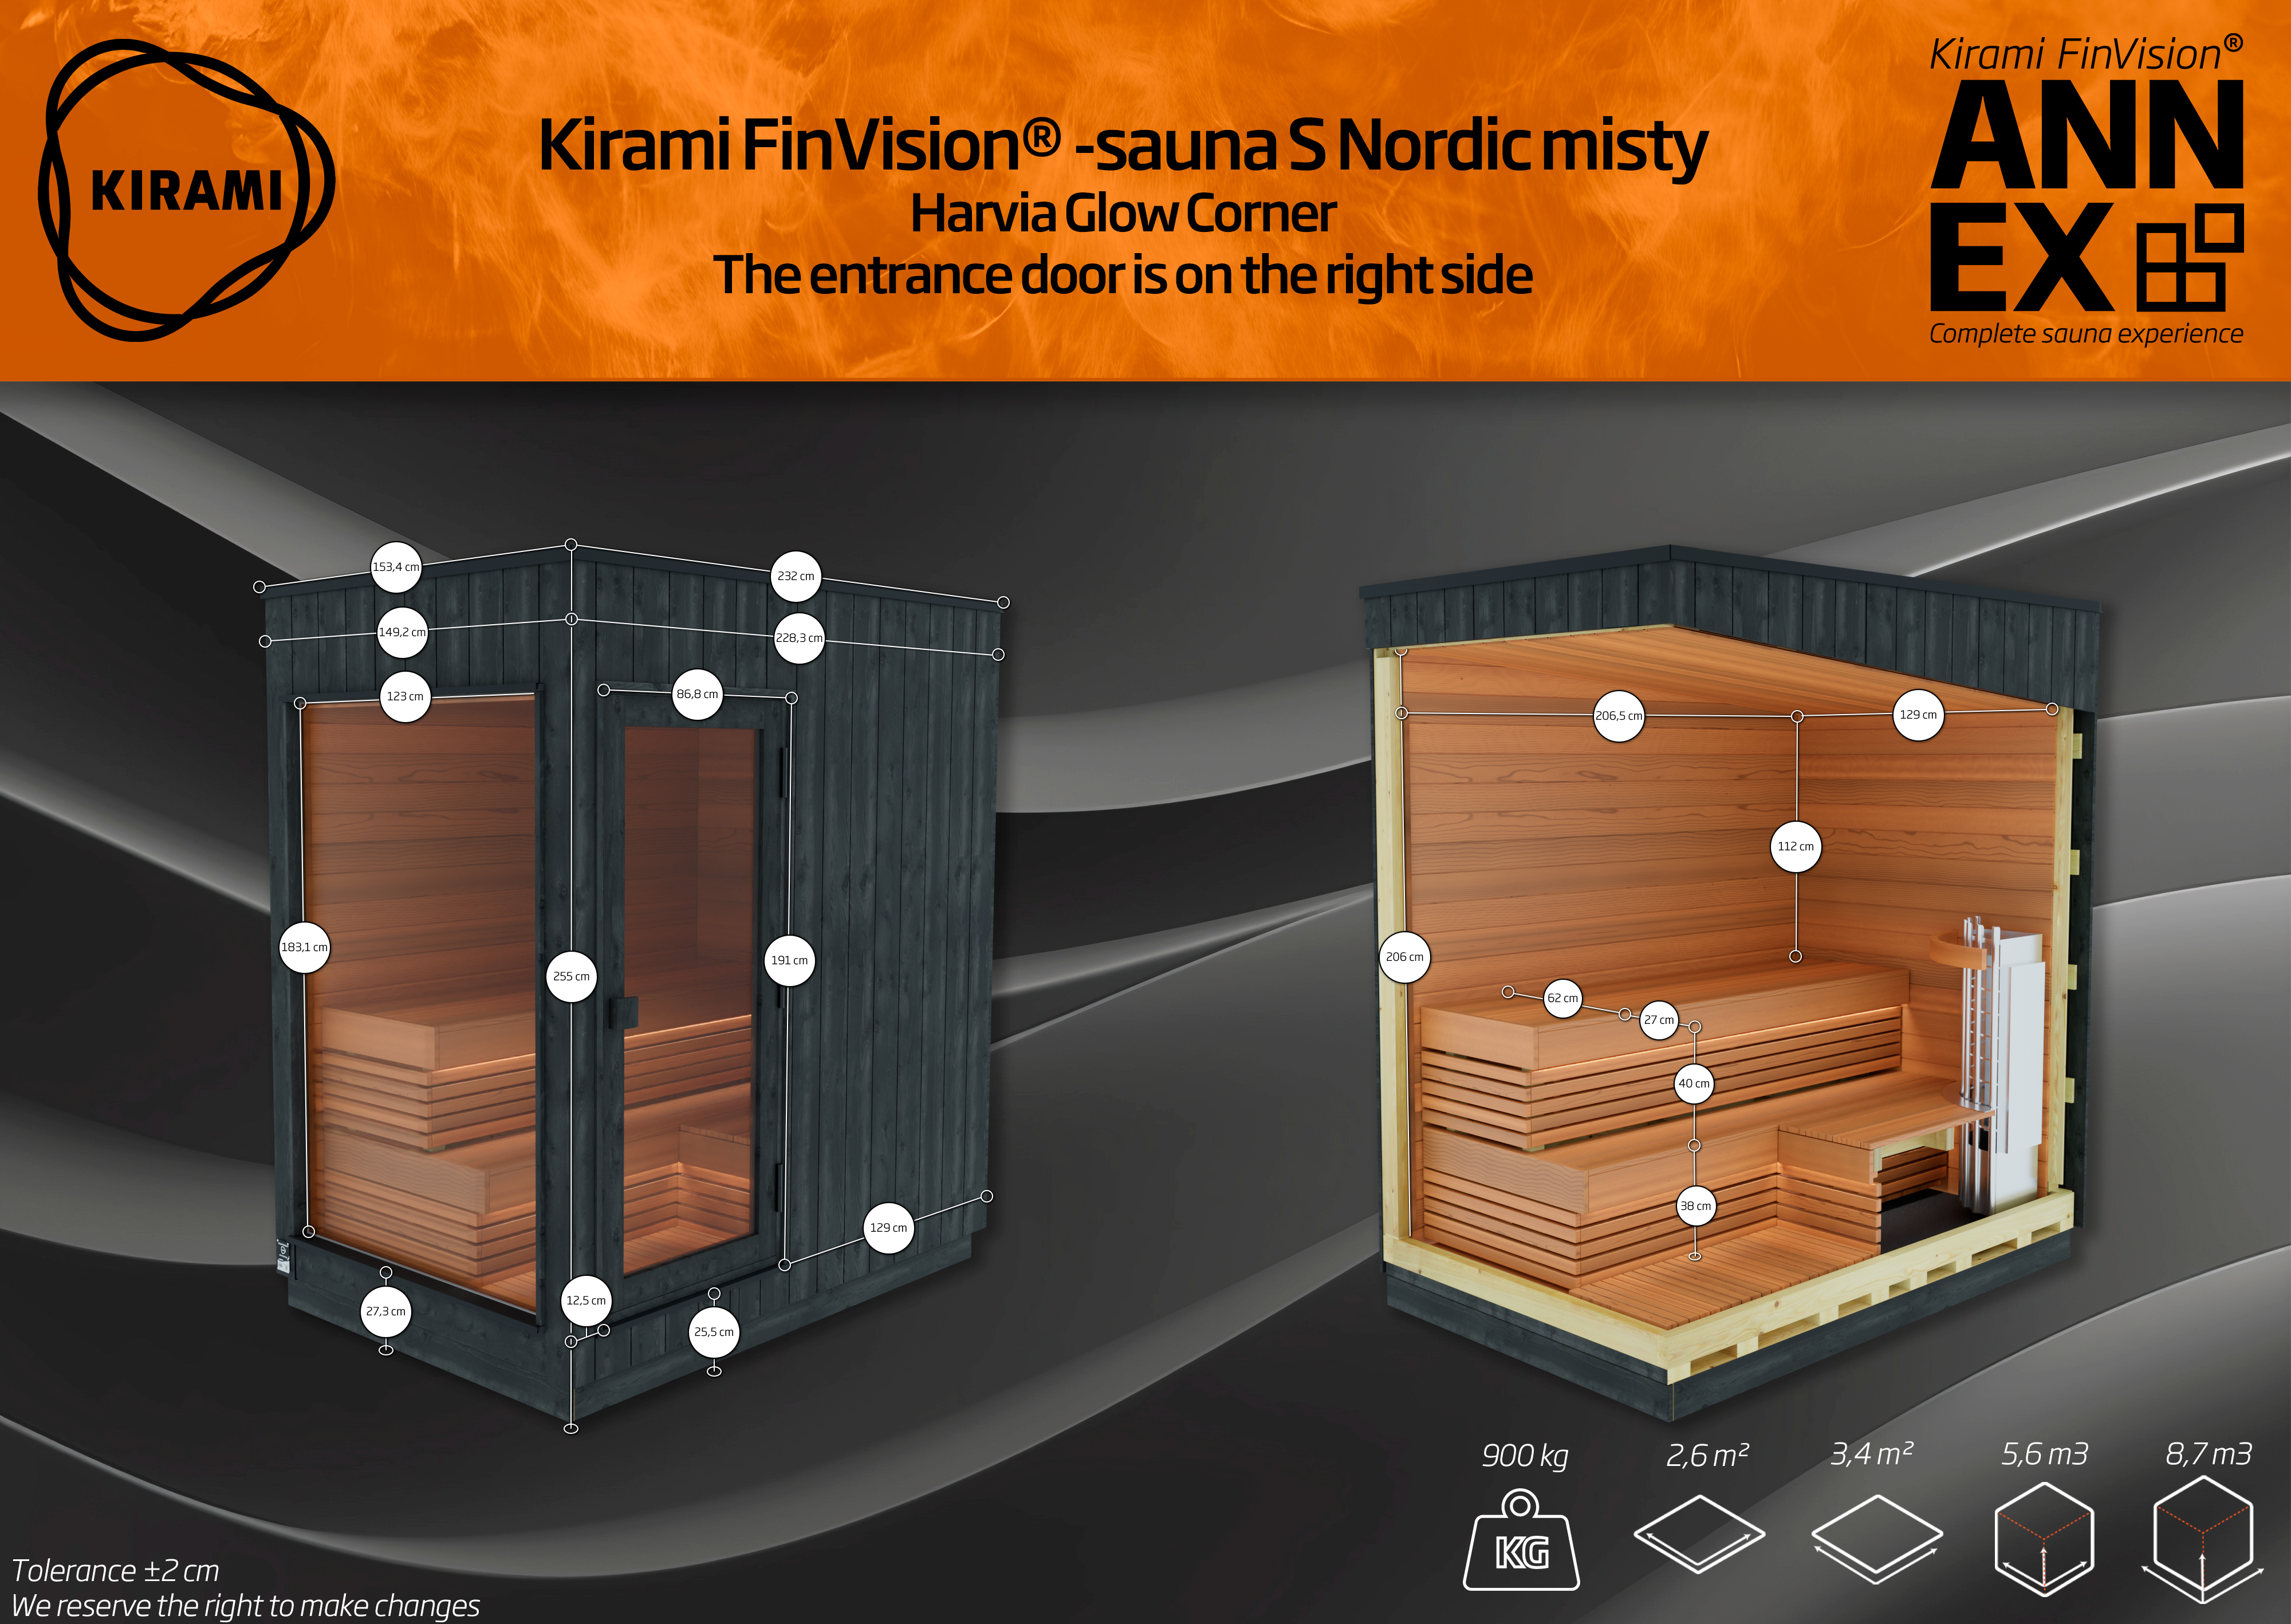 Kirami FinVision -sauna S Nordic misty (Right)